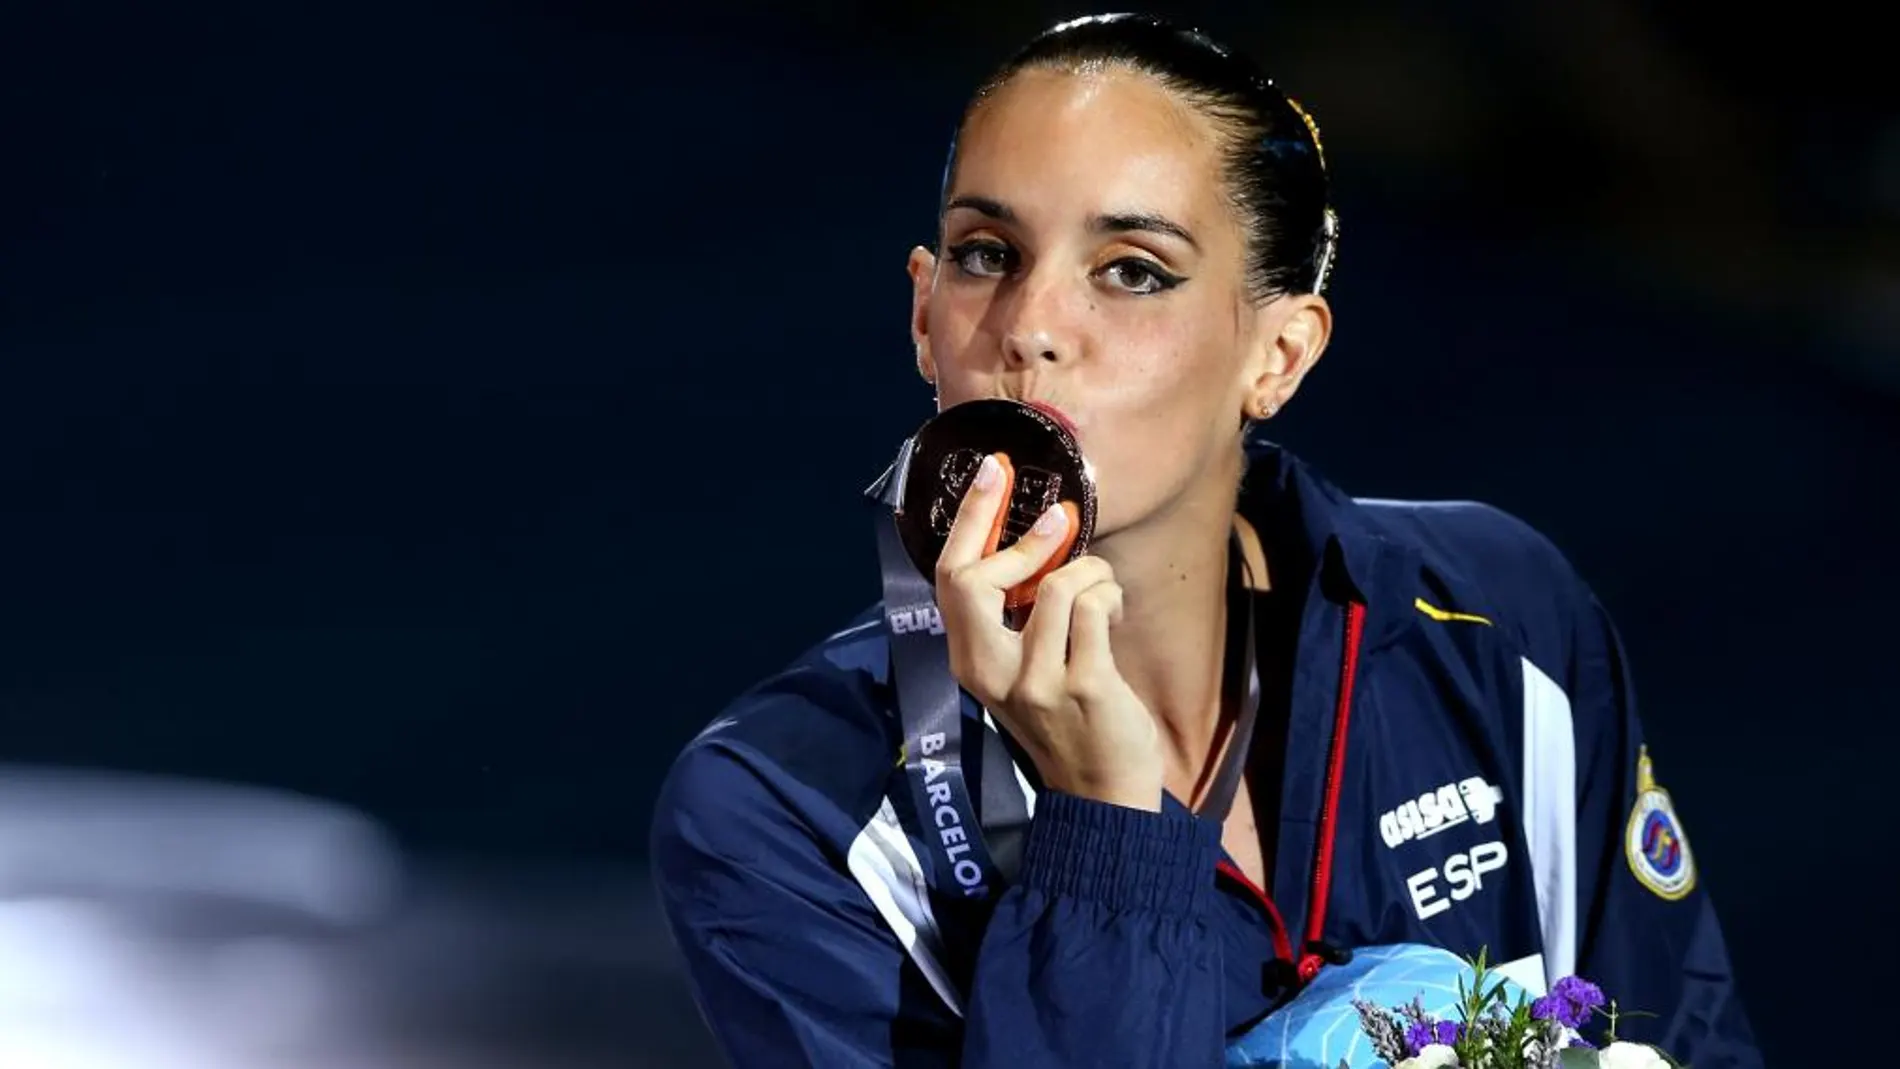 La nadadora española Ona Carbonell besa la medalla lograda en el Campeonato del Mundo de Natación 2013.